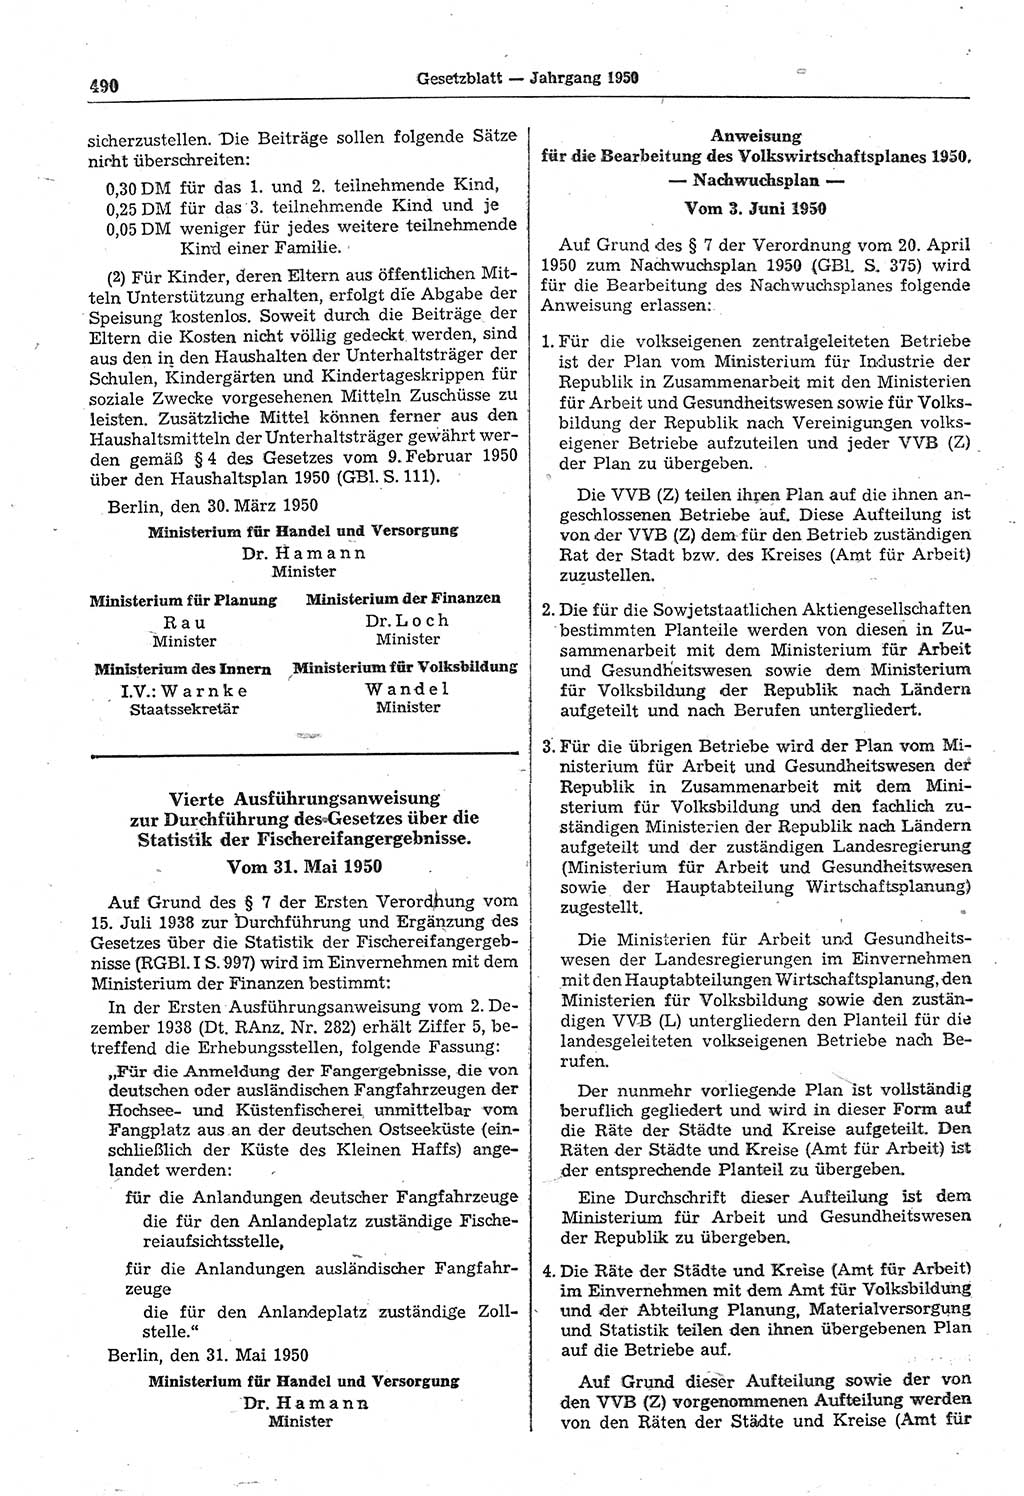 Gesetzblatt (GBl.) der Deutschen Demokratischen Republik (DDR) 1950, Seite 490 (GBl. DDR 1950, S. 490)